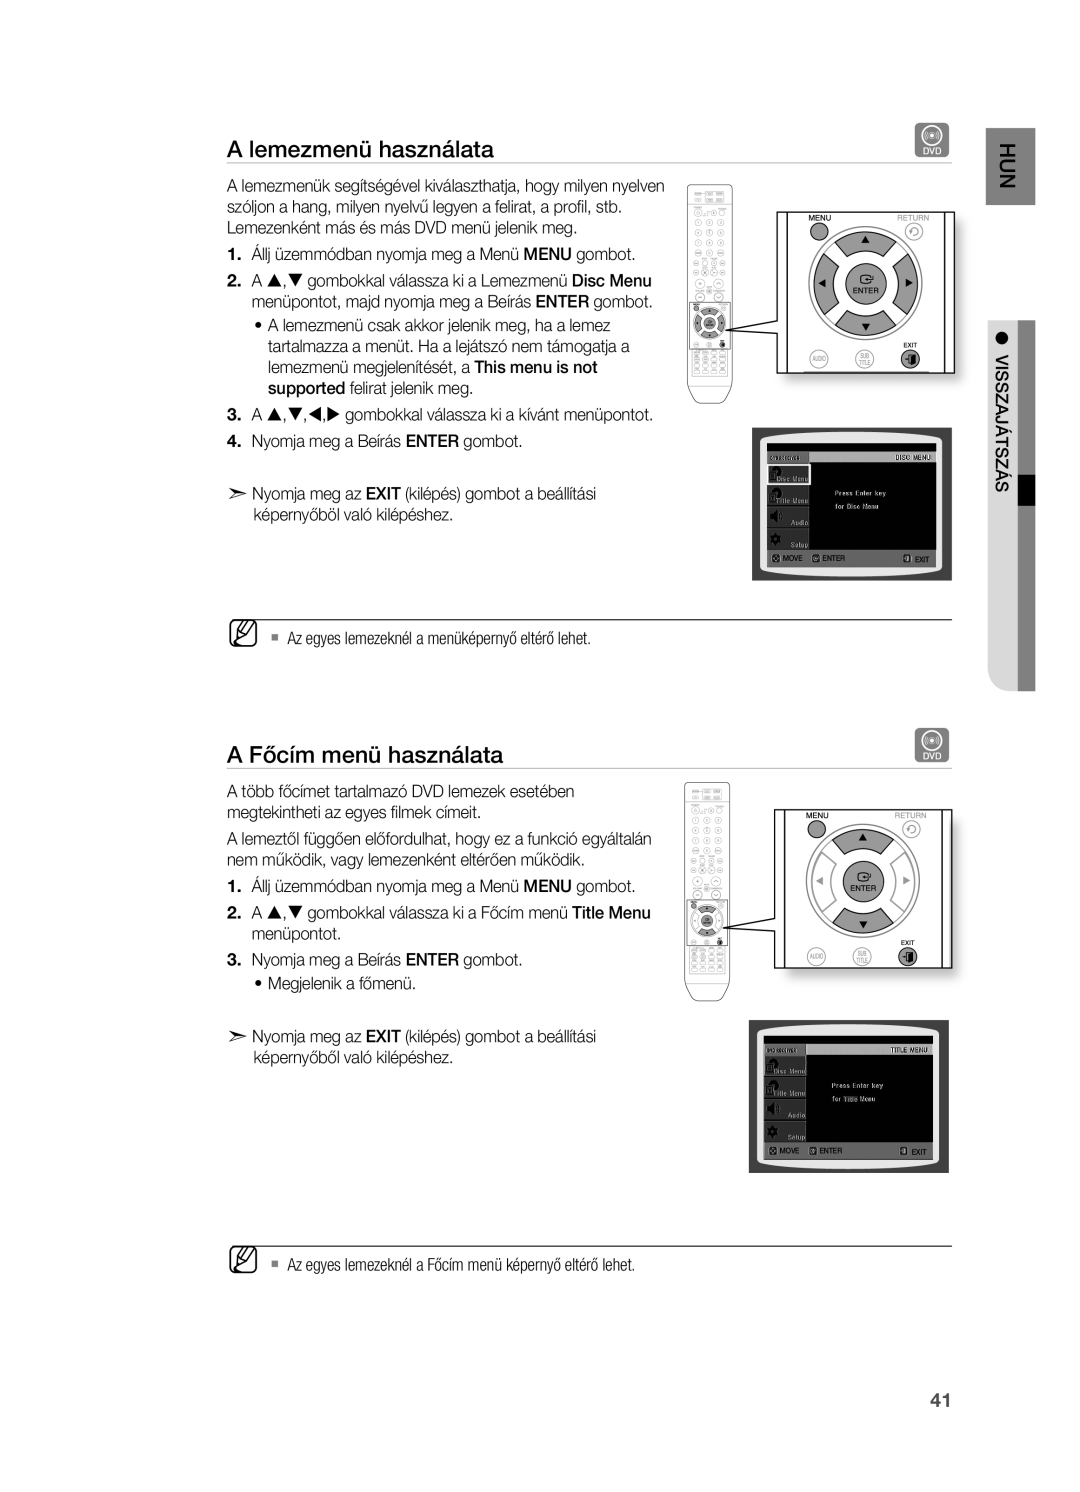 Samsung HT-X715T/EDC manual Lemezmenü használata, Főcím menü használata, Állj üzemmódban nyomja meg a Menü Menu gombot 